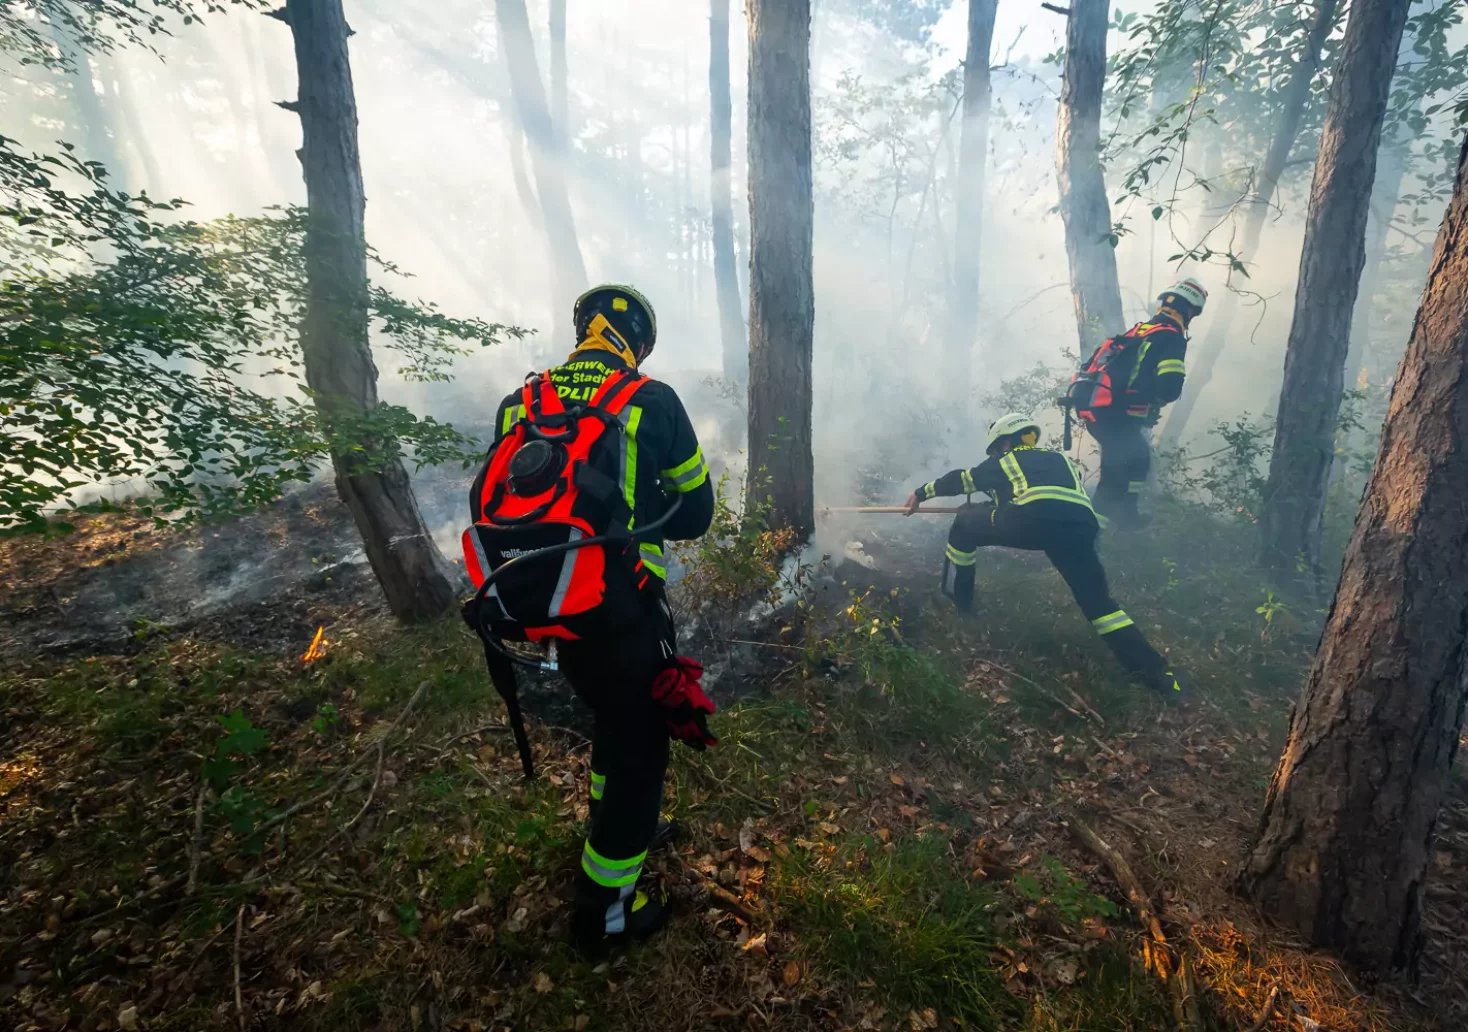 Hat Lagerfeuer zu Waldbrand geführt? Polizei bittet um Hinweise